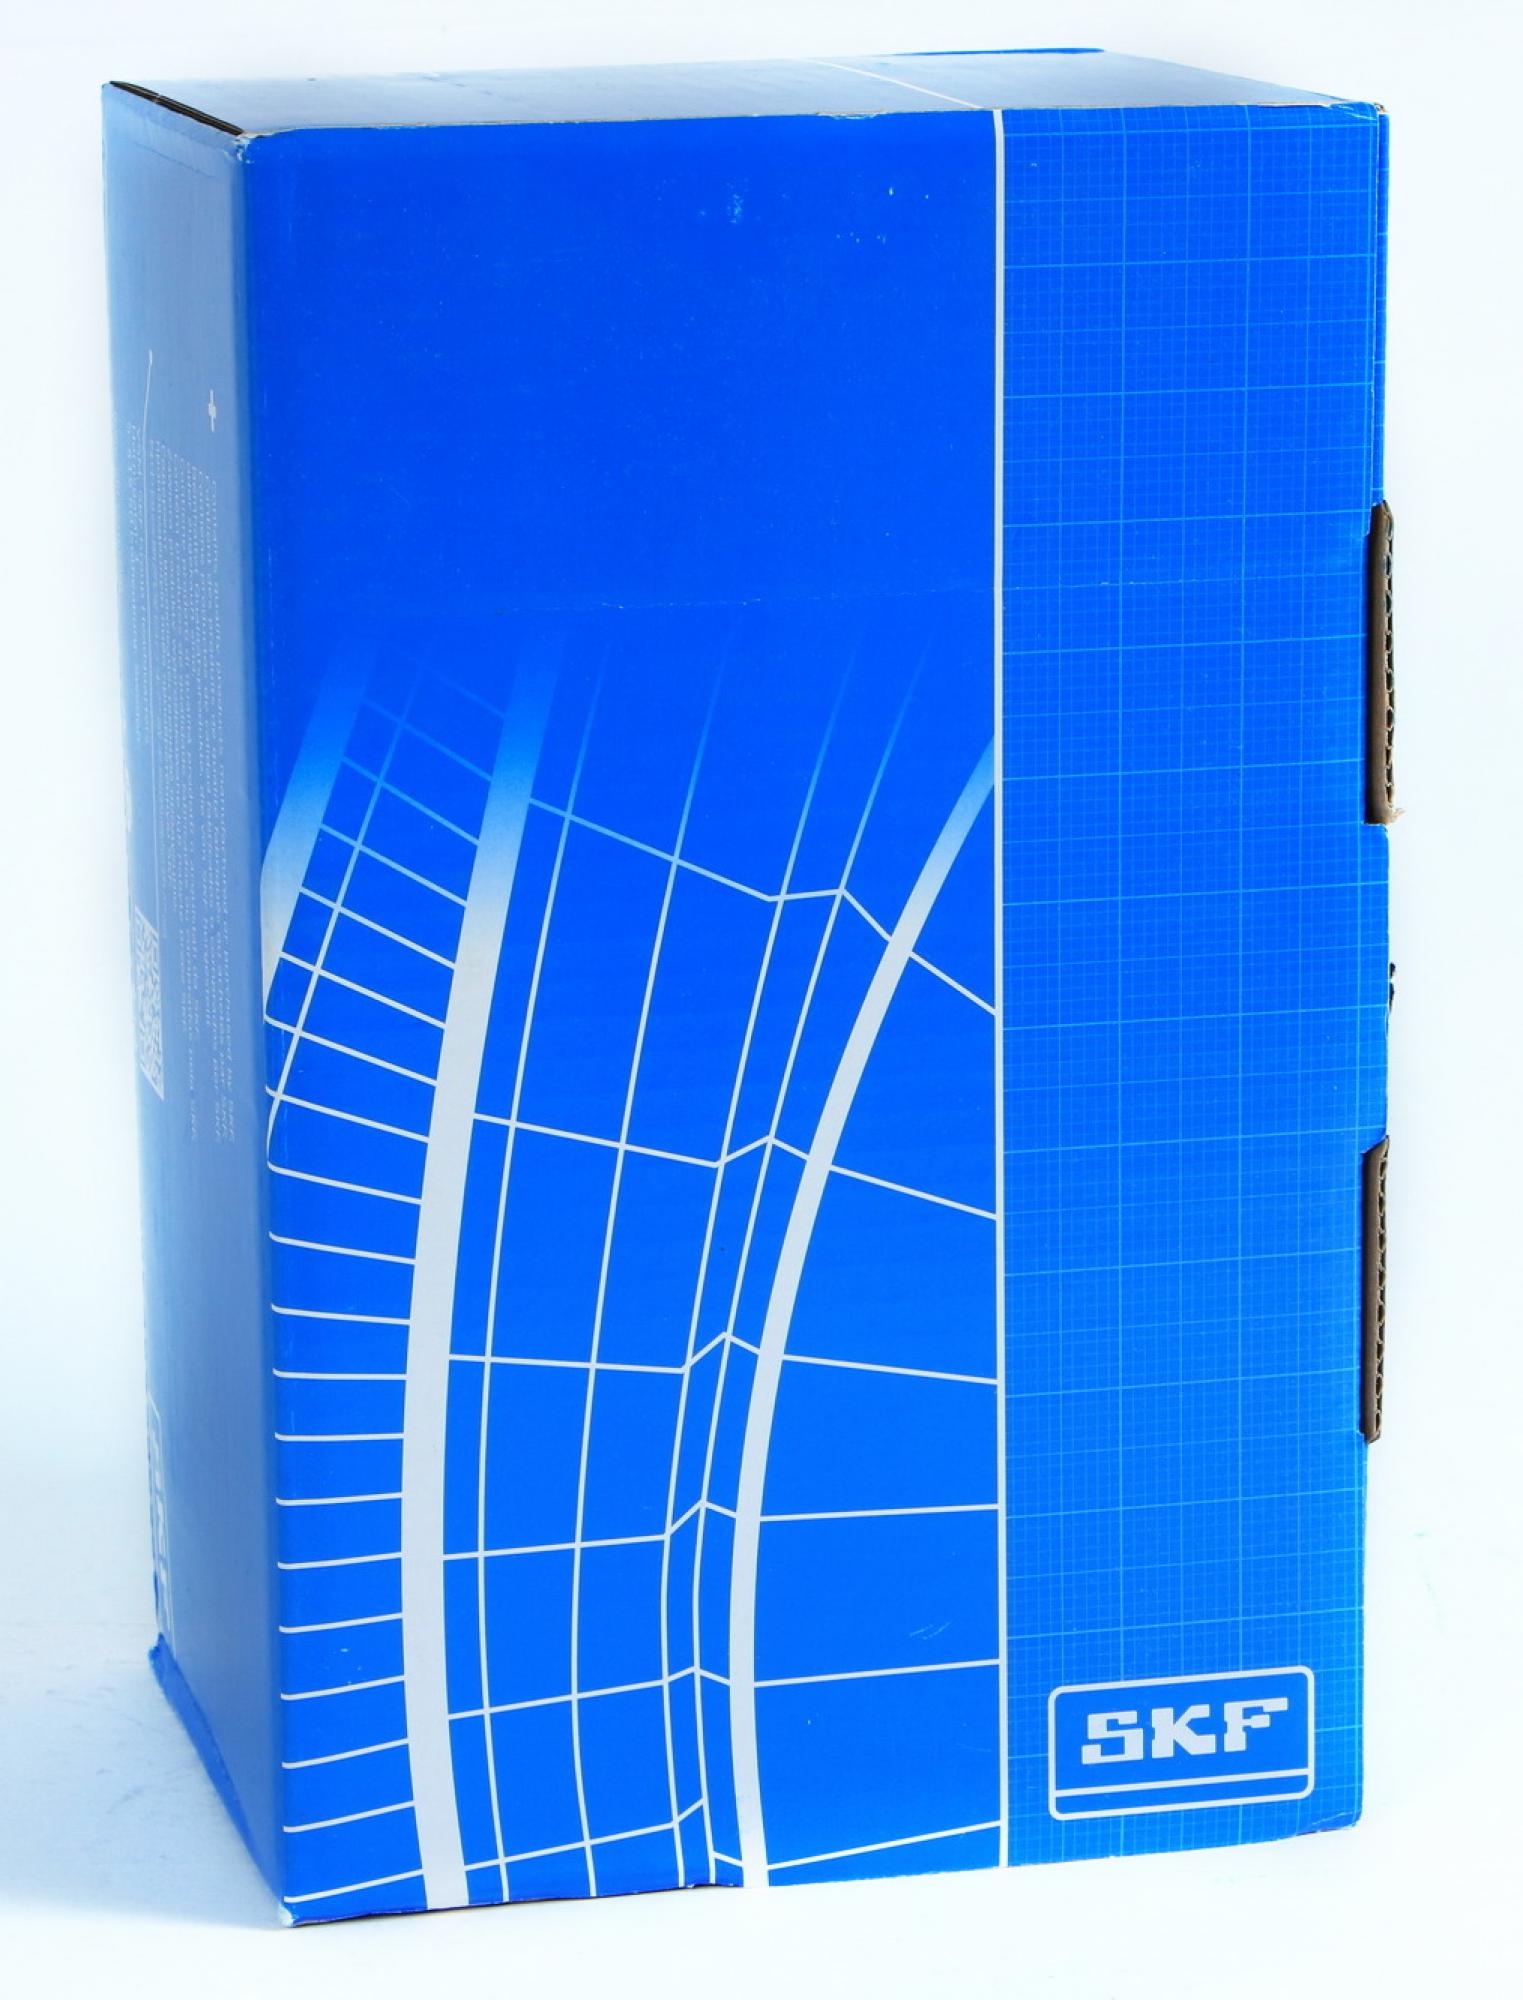 SKF Zahnriemensatz+Wasserpumpe für Subaru VKMC 98109-2